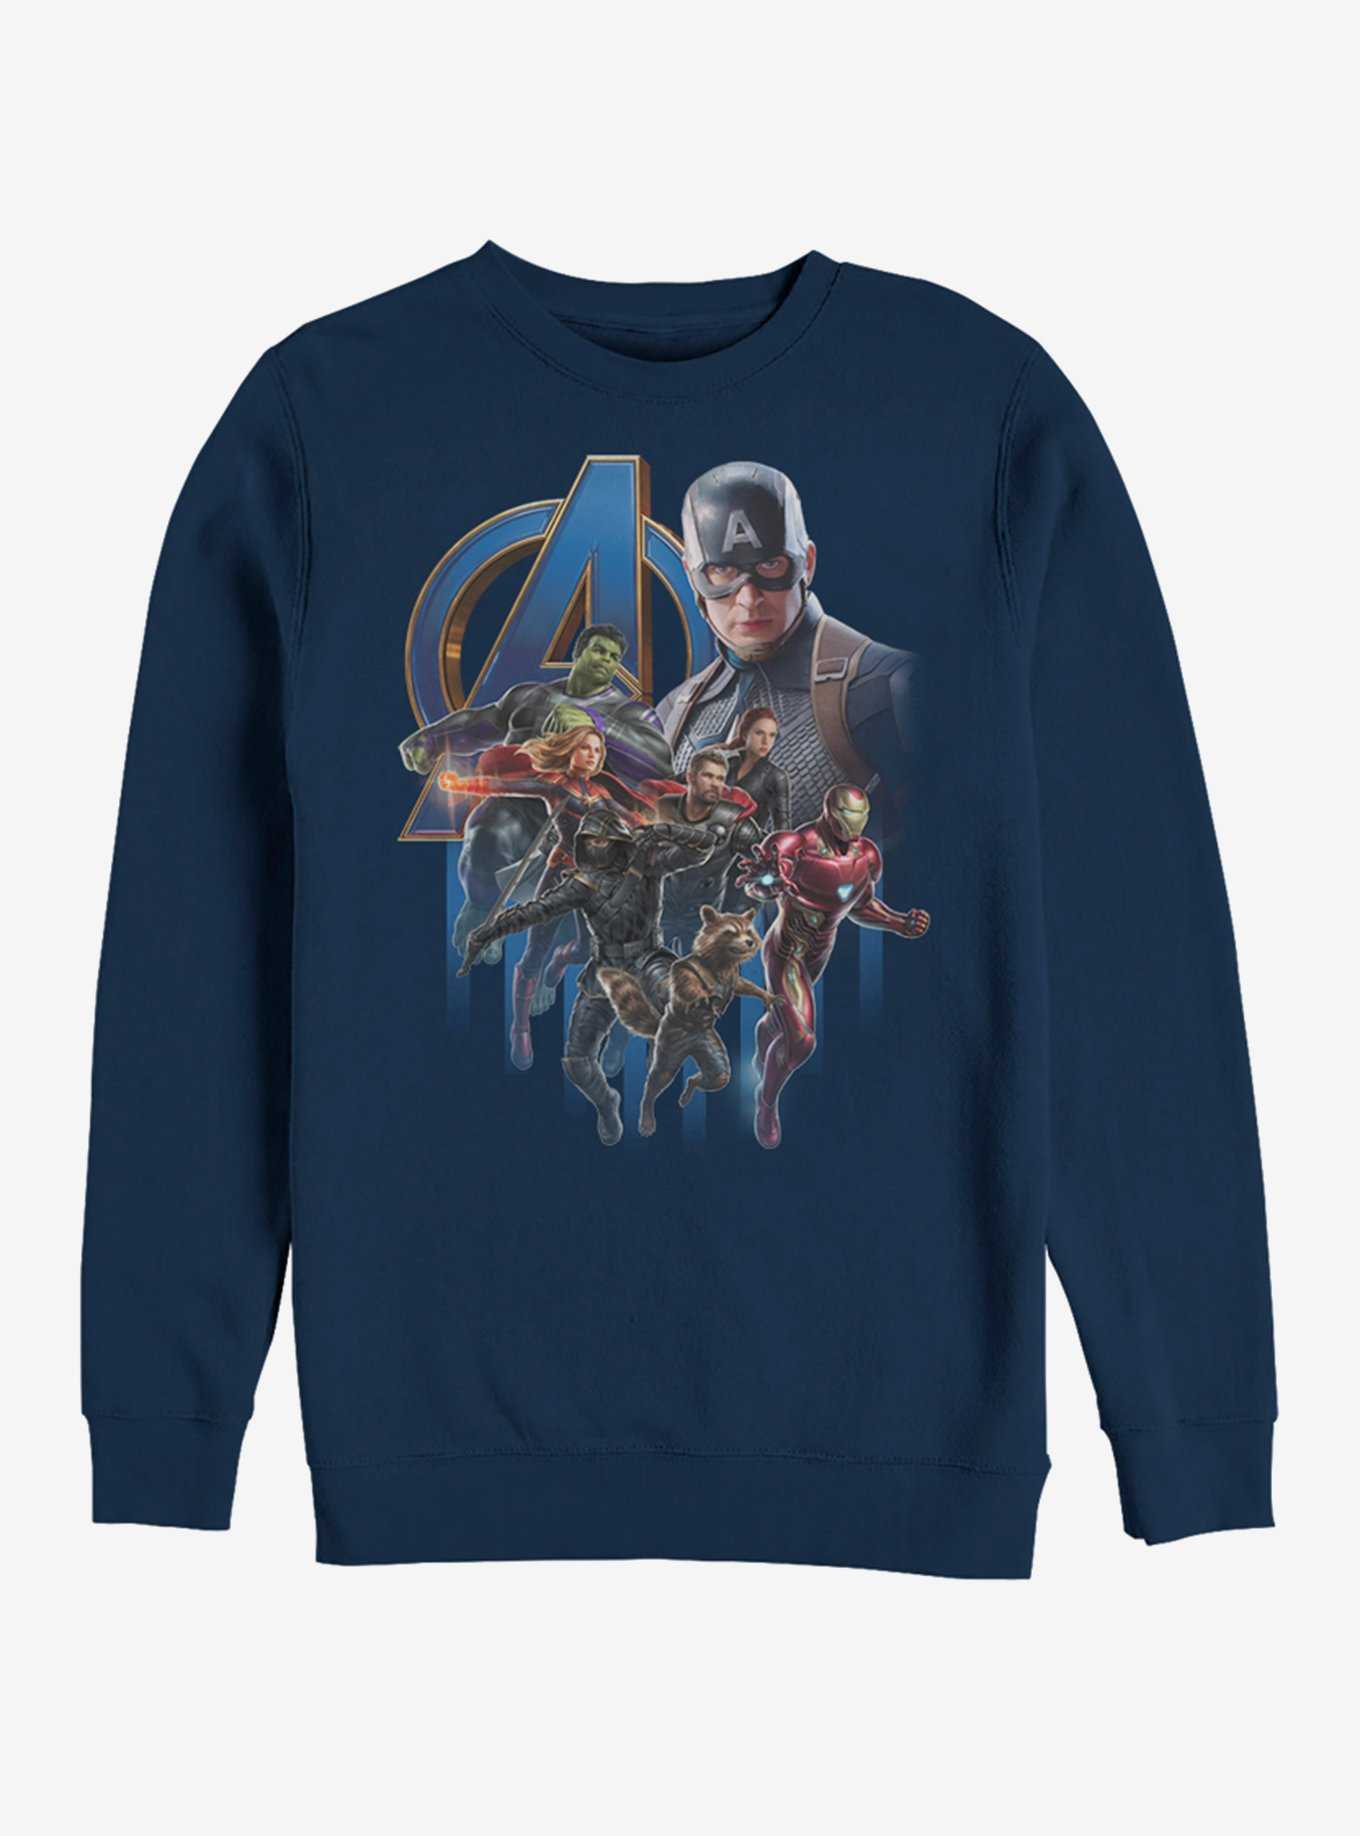 Marvel Avengers: Endgame Avengers Group Poster Navy Blue Sweatshirt, , hi-res